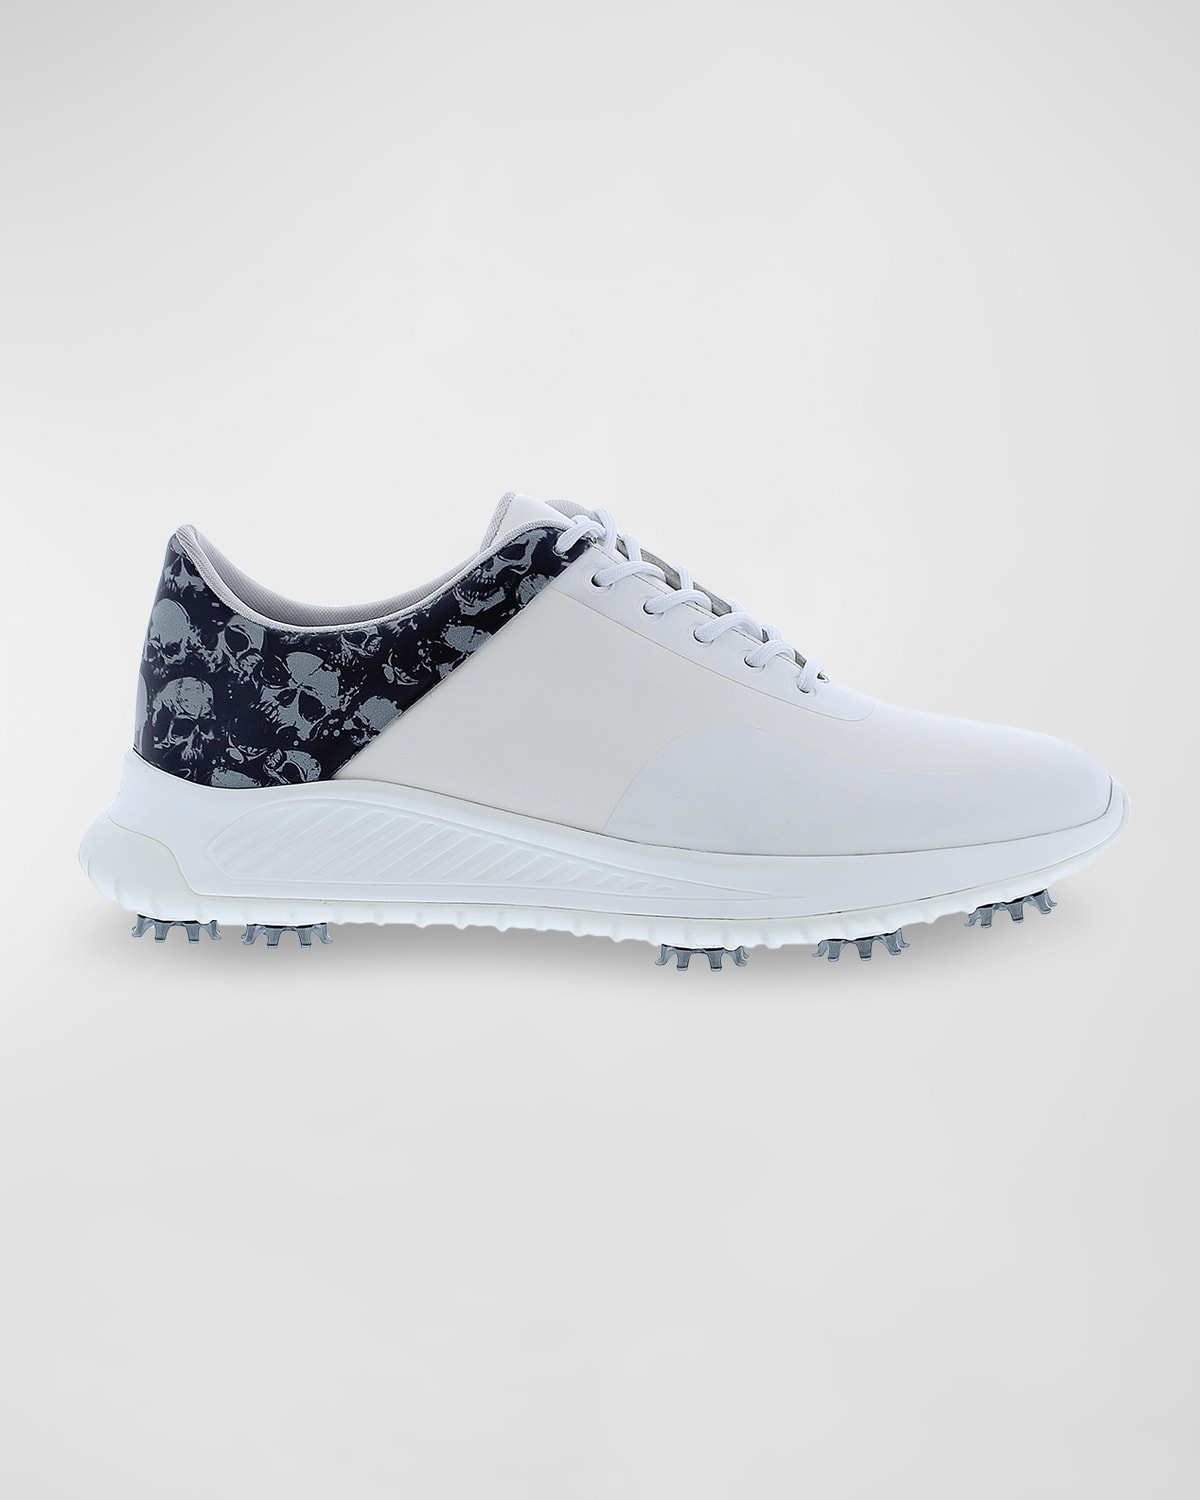 Men's Crockett Leather Golf Sneakers w/ Spikes